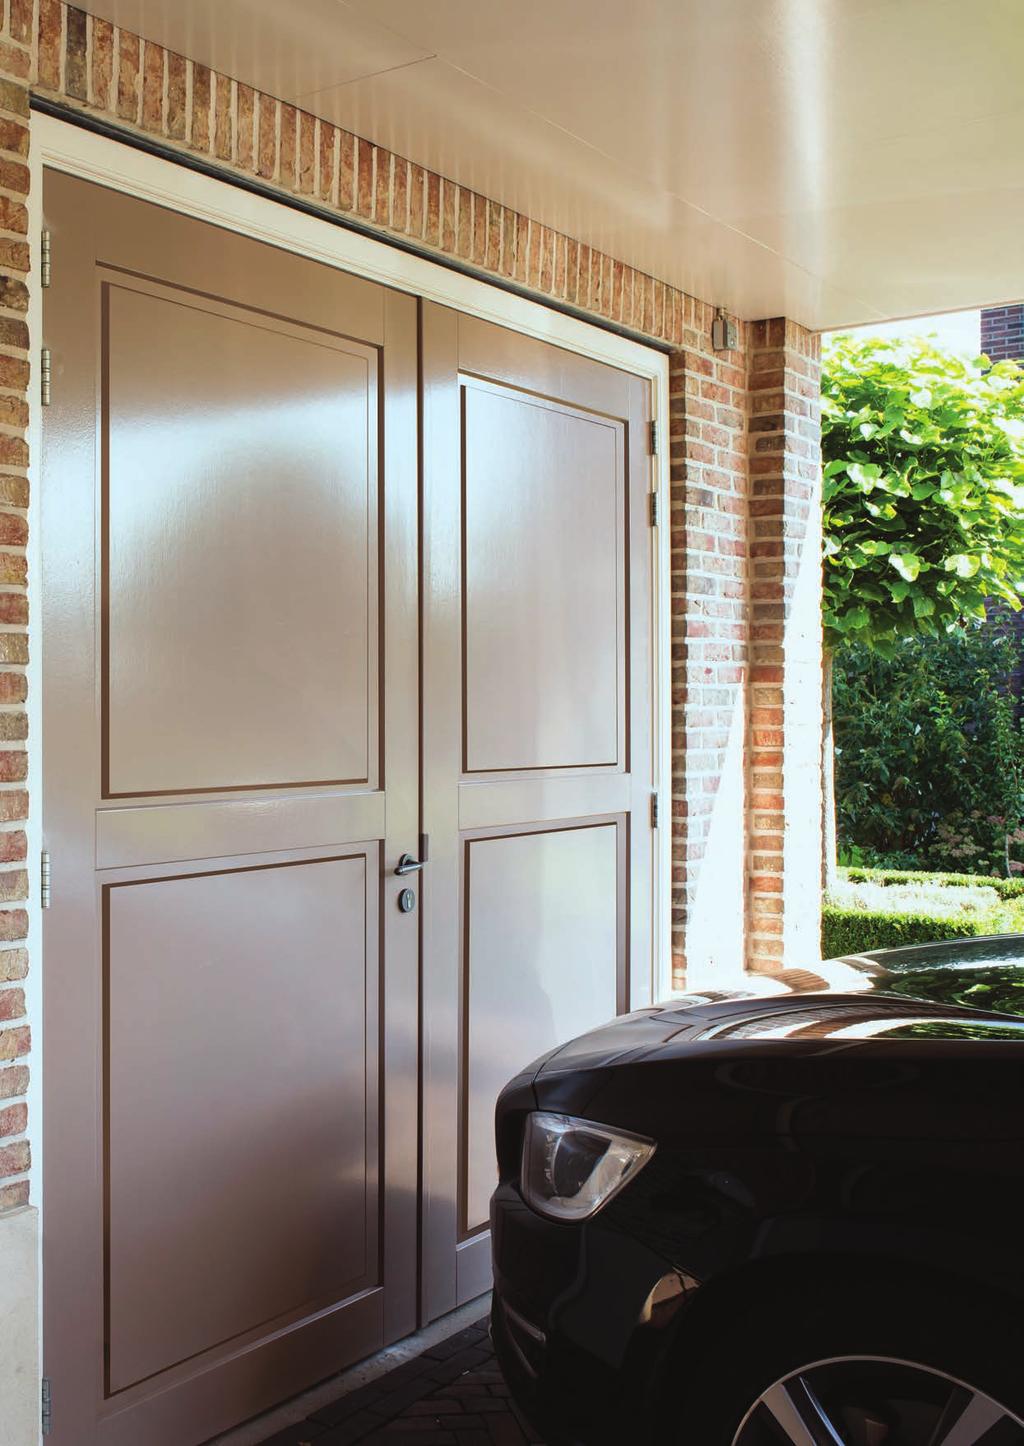 Garagedeuren Weekamp garagedeuren worden vervaardigd van hoogwaardige materialen. Wij bieden diverse modellen op maat, gemaakt van massief houten stijlen en dorpels met daartussen panelen.